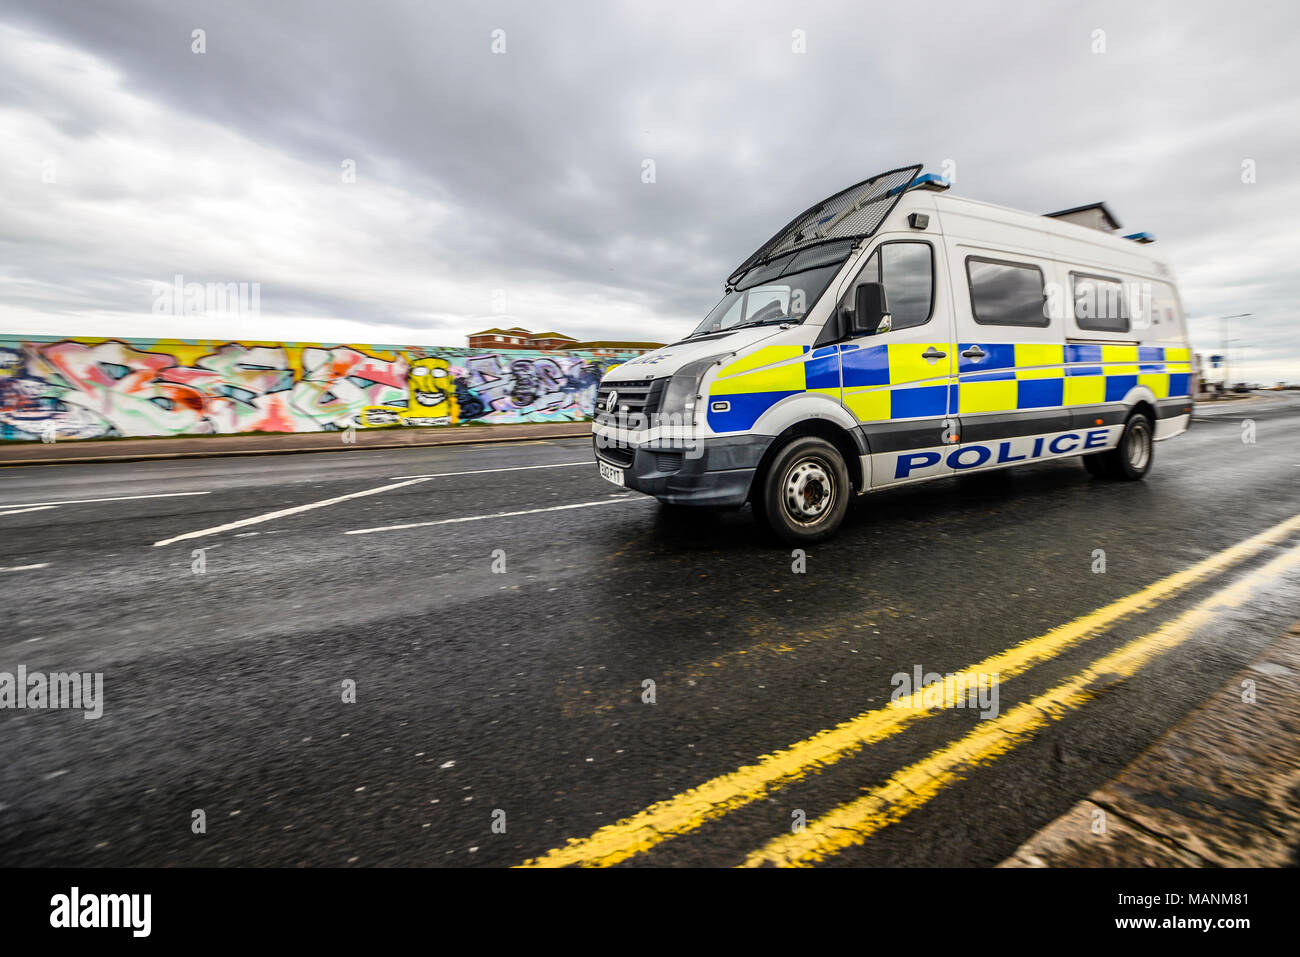 La policía van pasando el acaparamiento cubierto de pintadas en Southend on Mar Mar en Bank Holiday Monday operación policial para perturbar el Shakedown no oficial Foto de stock